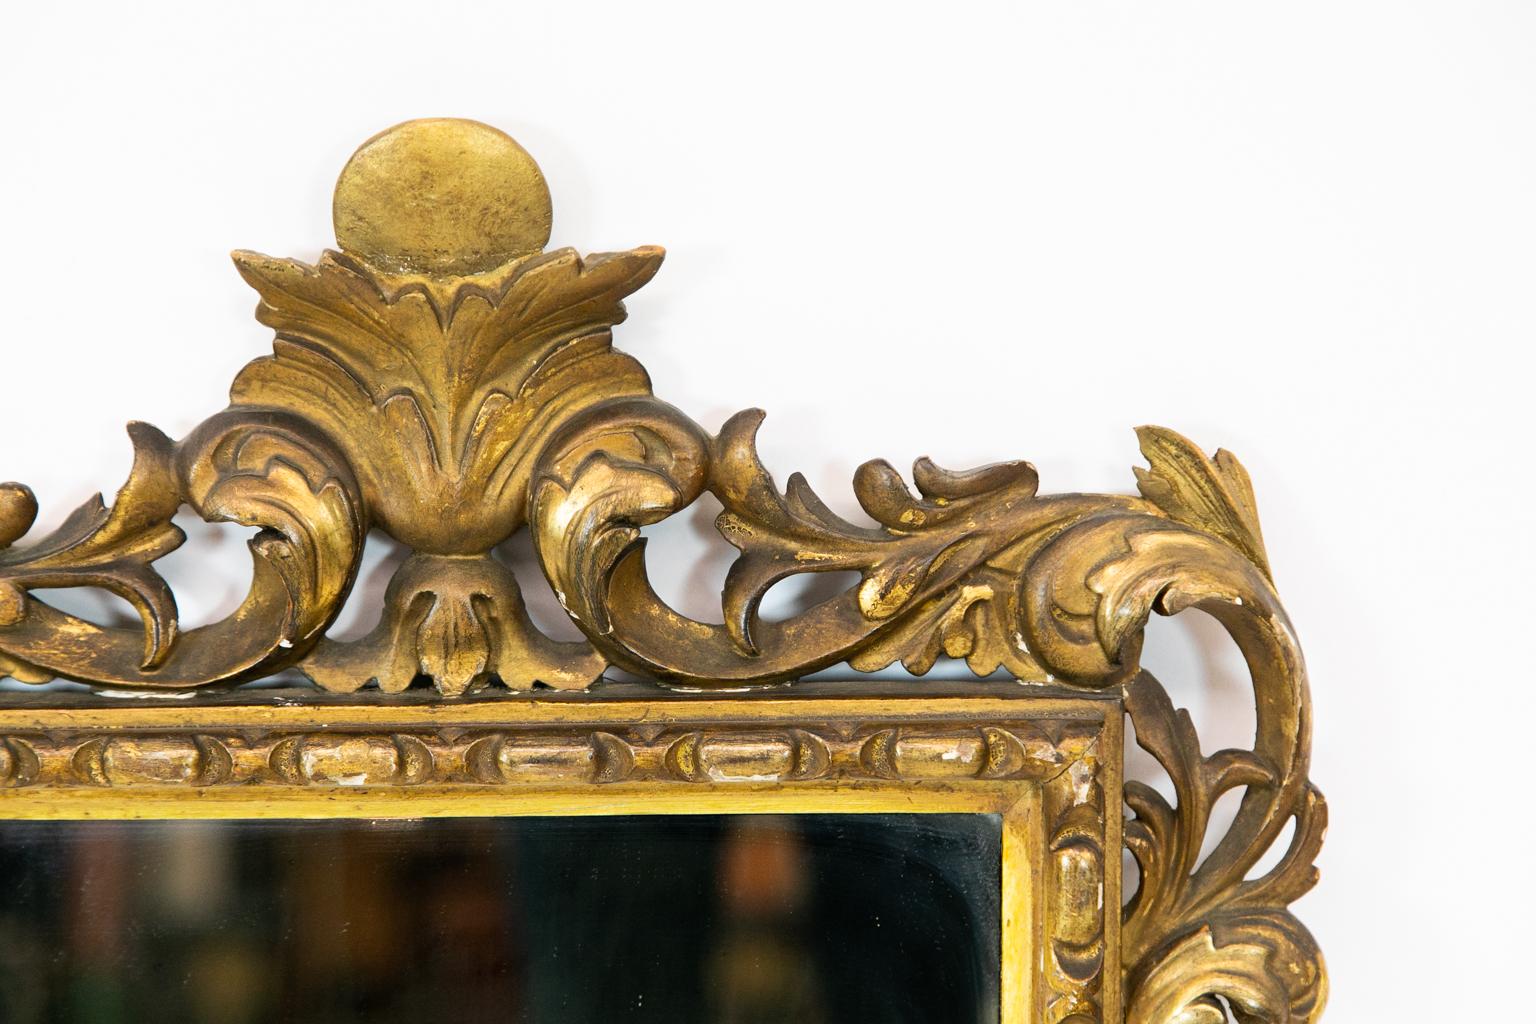 Le miroir français sculpté et doré est orné d'arabesques florales et de moulures répétitives en forme d'œuf et de fléchette.